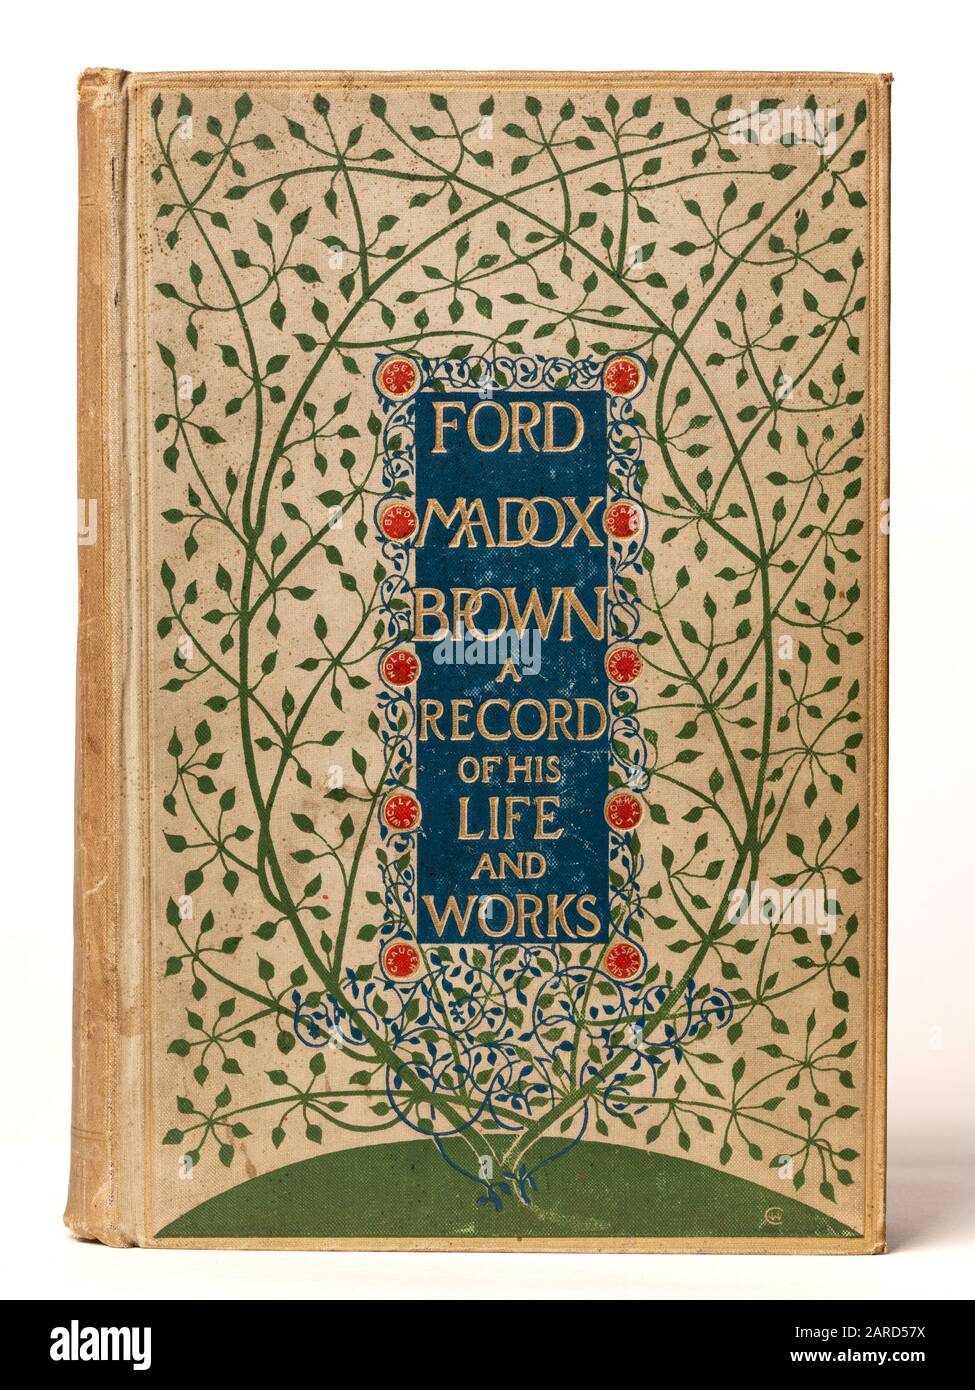 Frontcover einer Biographie des Pre-Raphaelite-Malers Ford Madox Brown von Ford Madox Hueffer Stockfoto